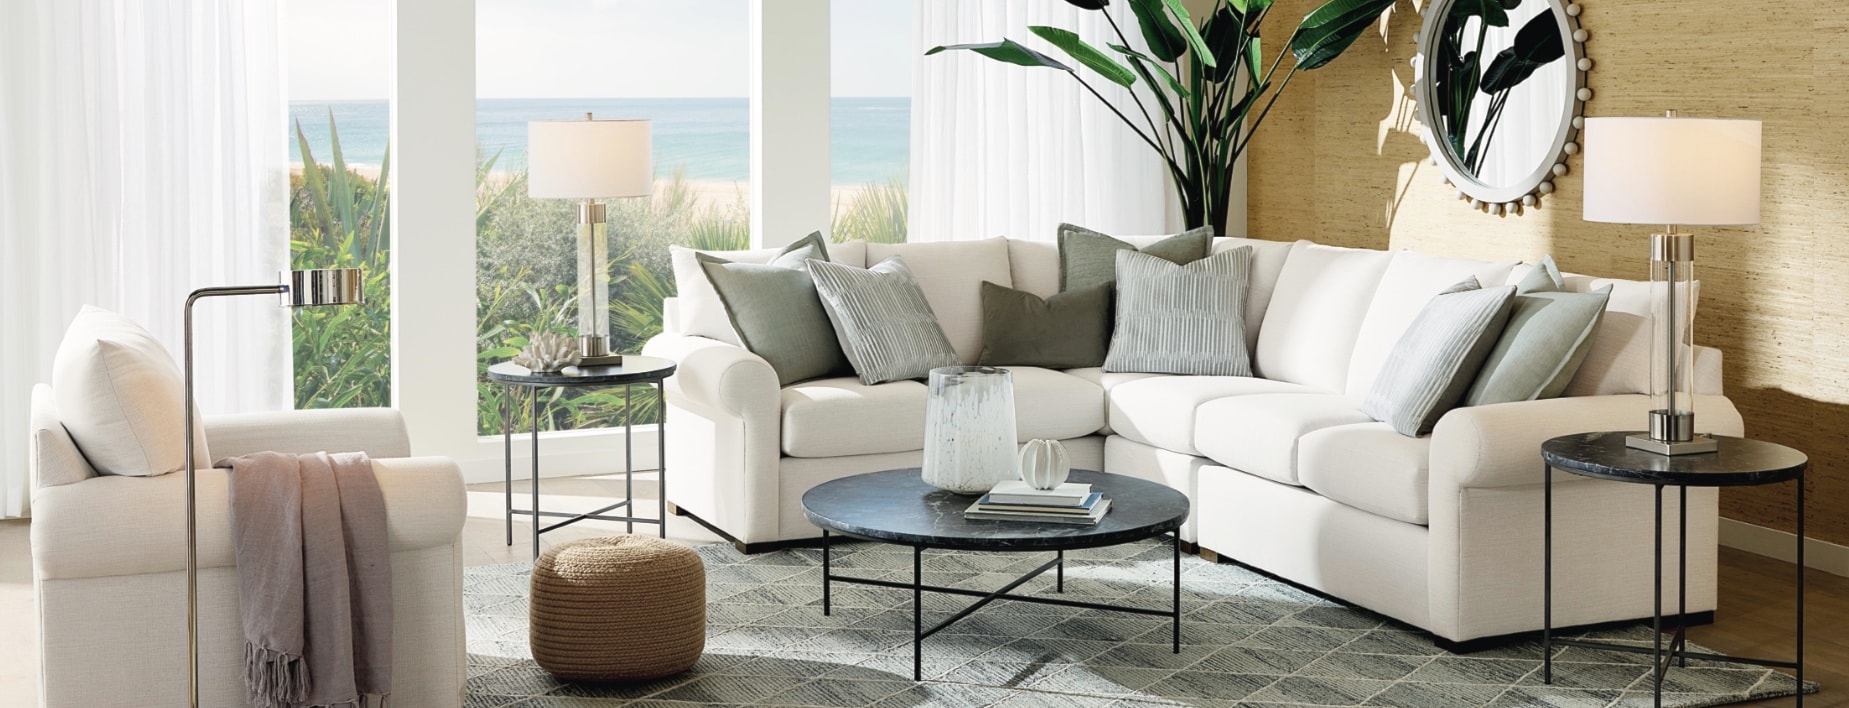 Custom upholstered living room set from Bassett furniture.